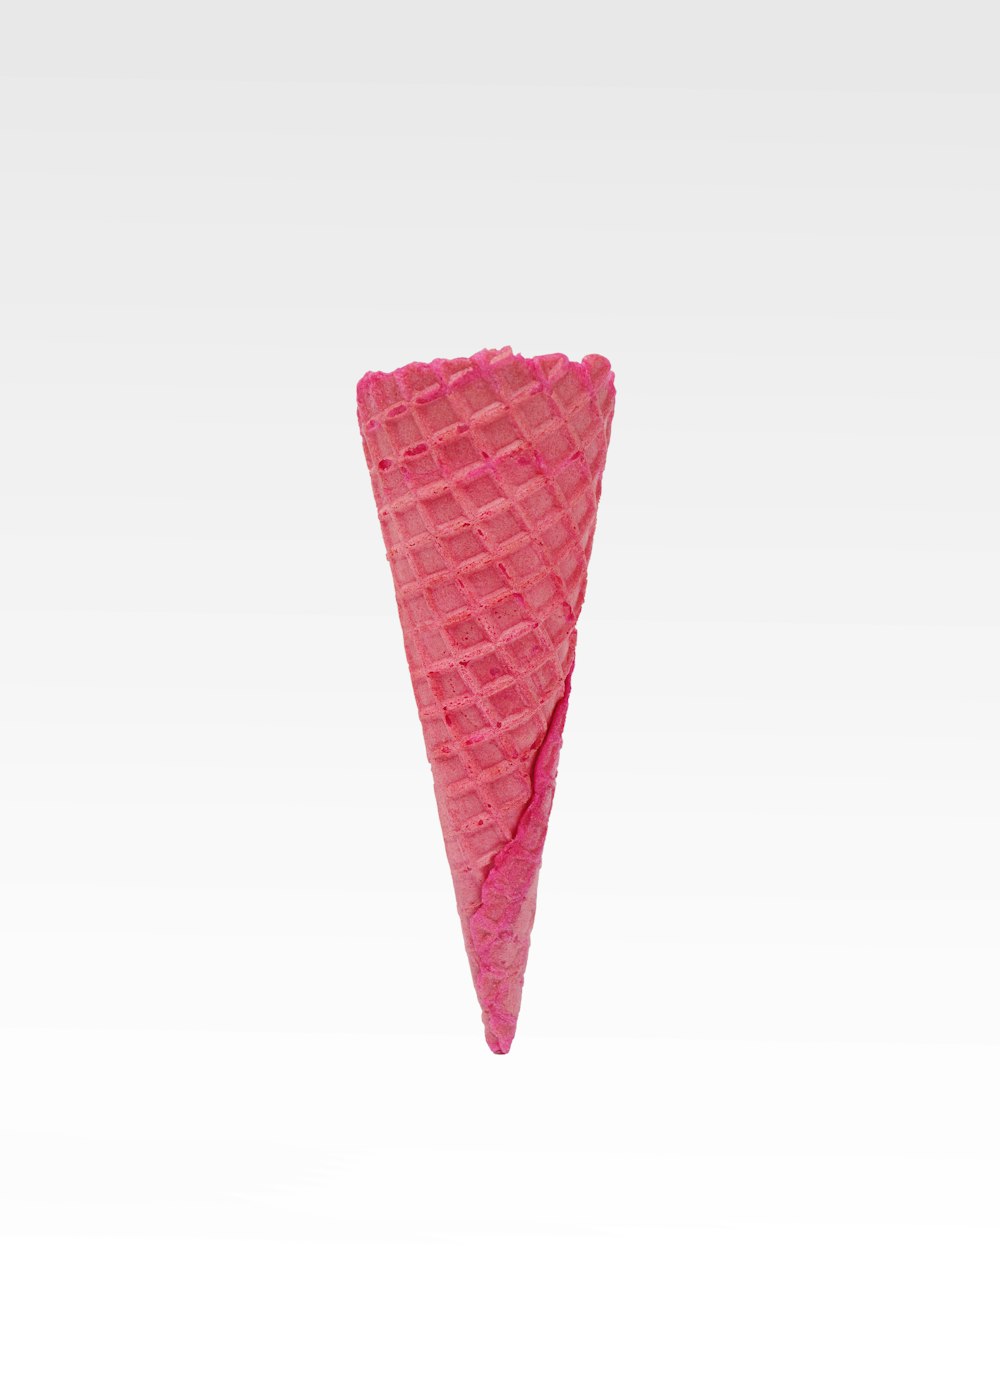 Crème glacée en cône rose sur fond blanc